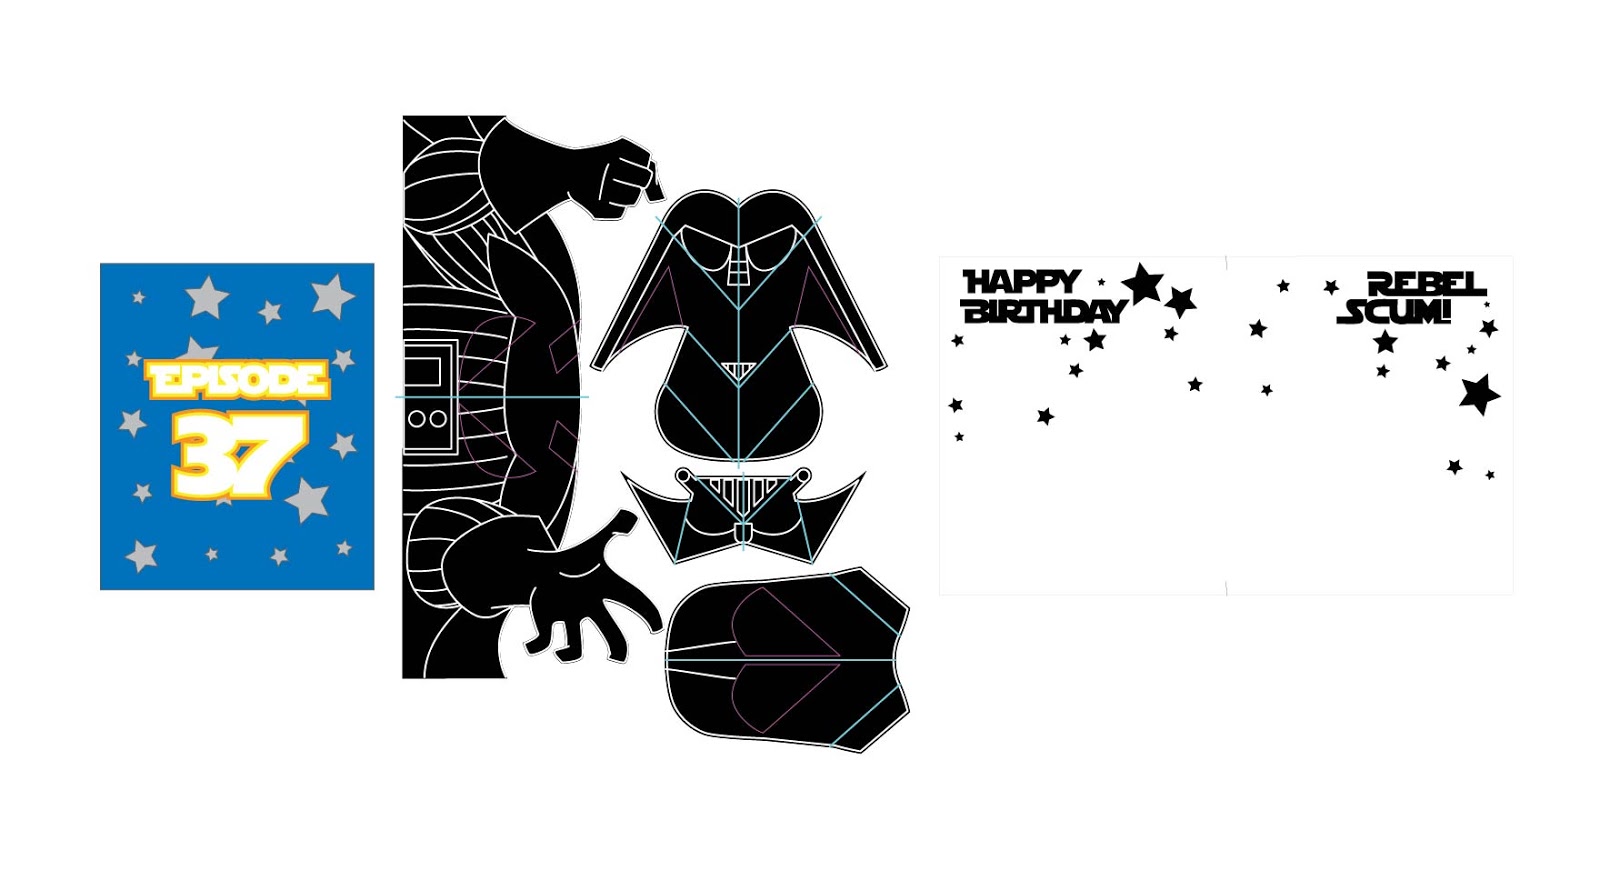 Download Awesome Svgs Darth Vader Pop Up Card Matthew Reinheart Design SVG, PNG, EPS, DXF File